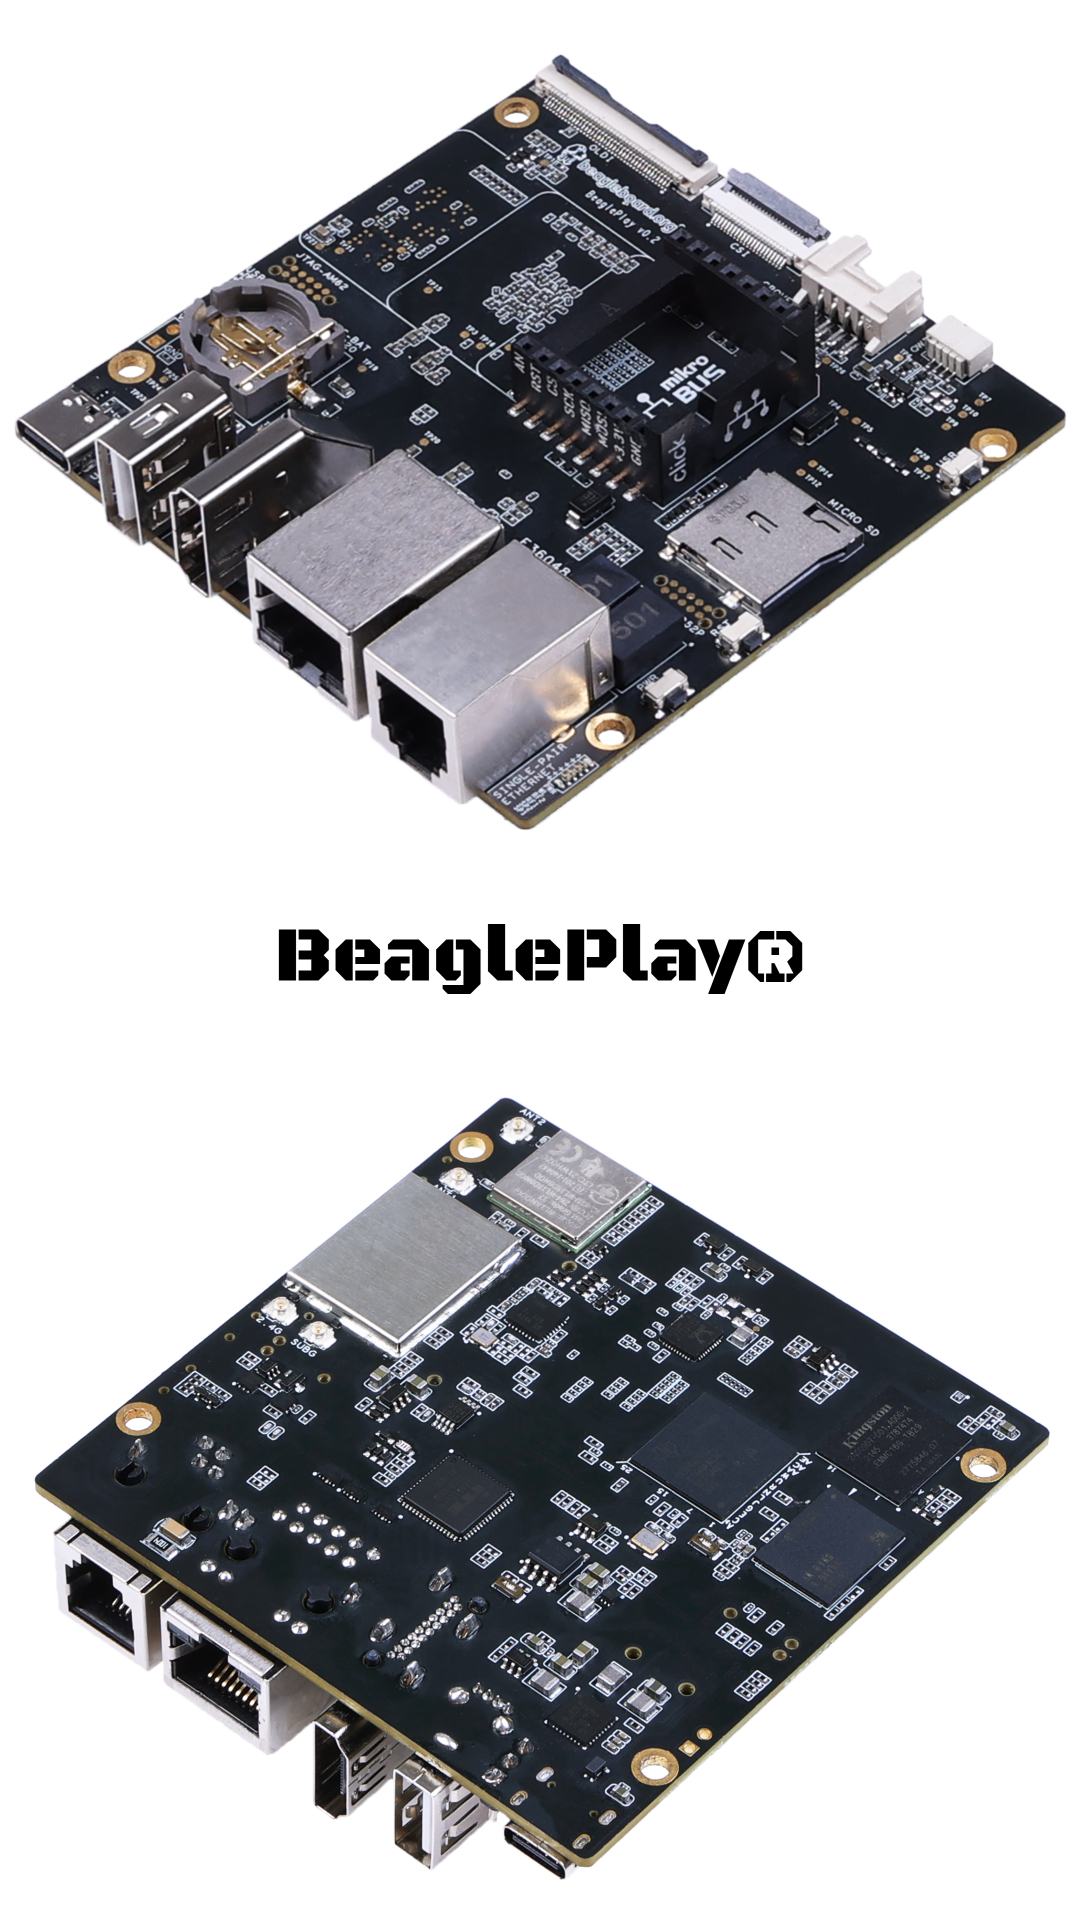 jednopłytkowy mini komputer BeaglePlay® SBC